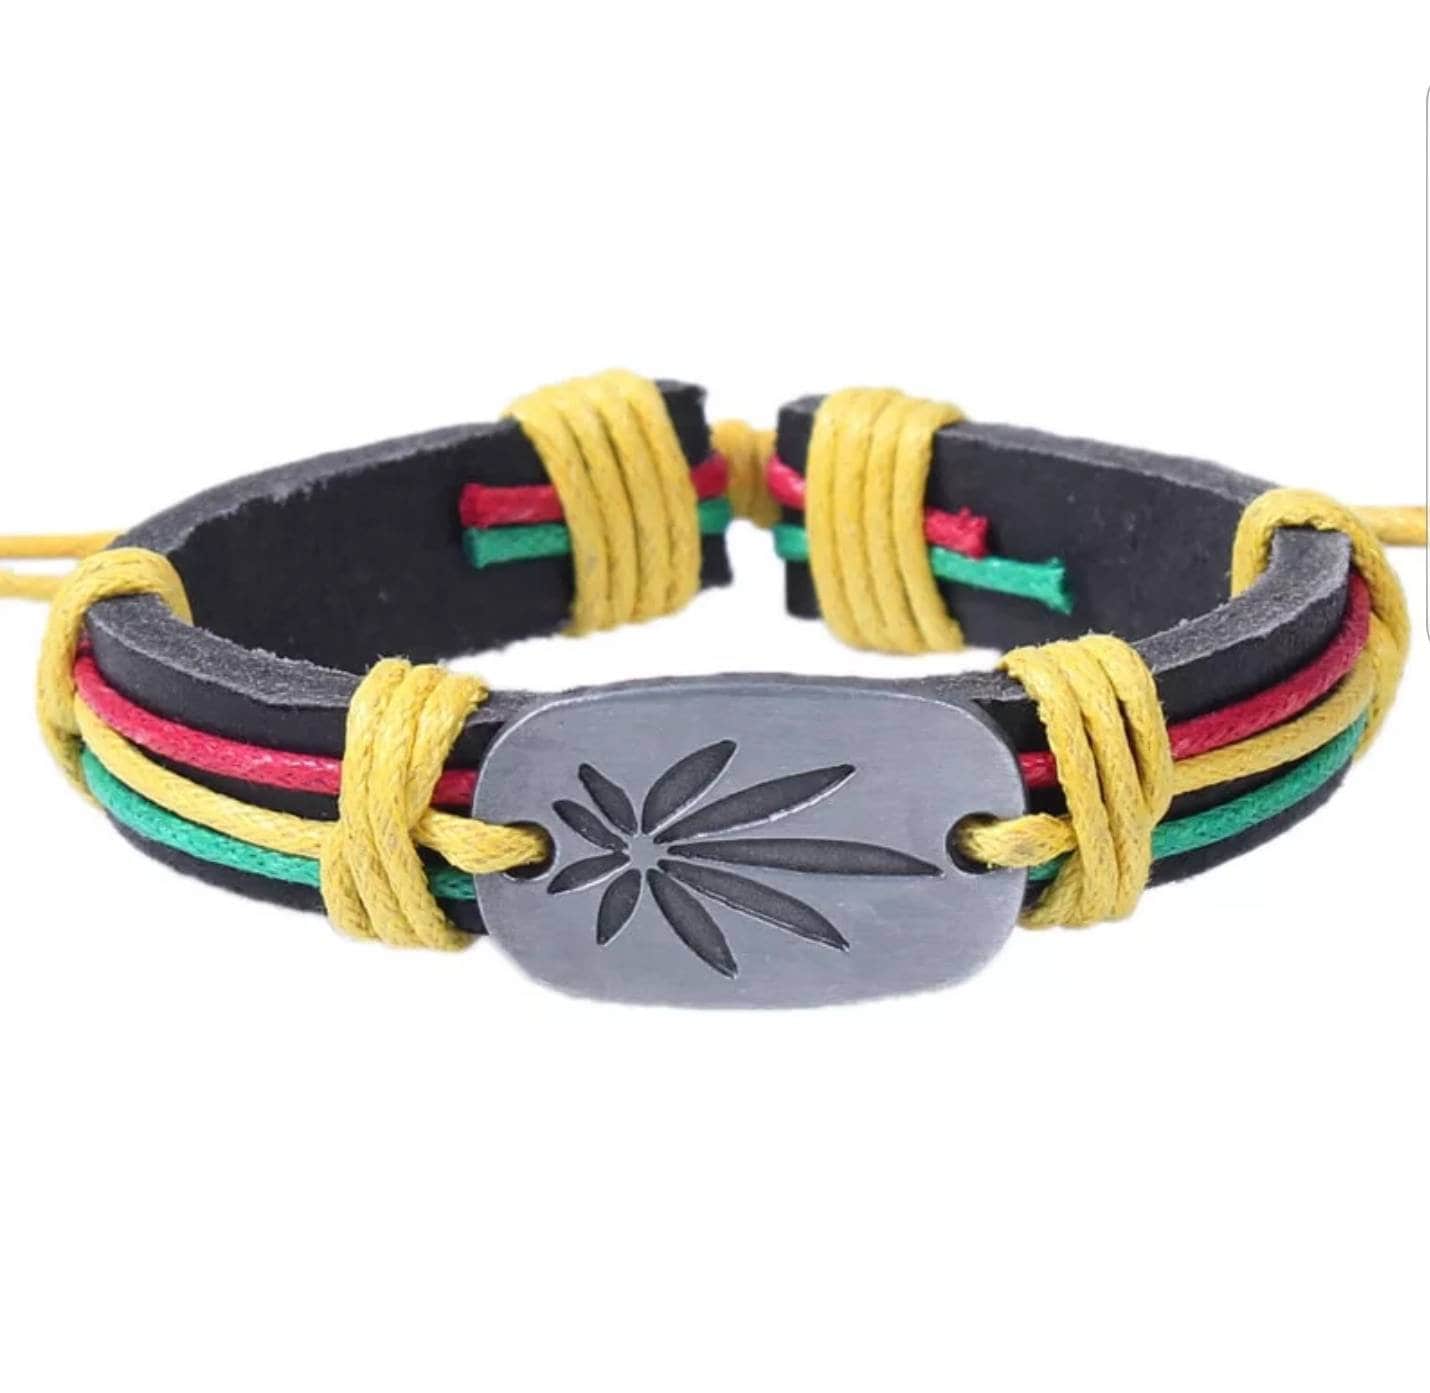 Weed Bracelet 420 bracelet Weed Tshirts Stoners gift | Etsy